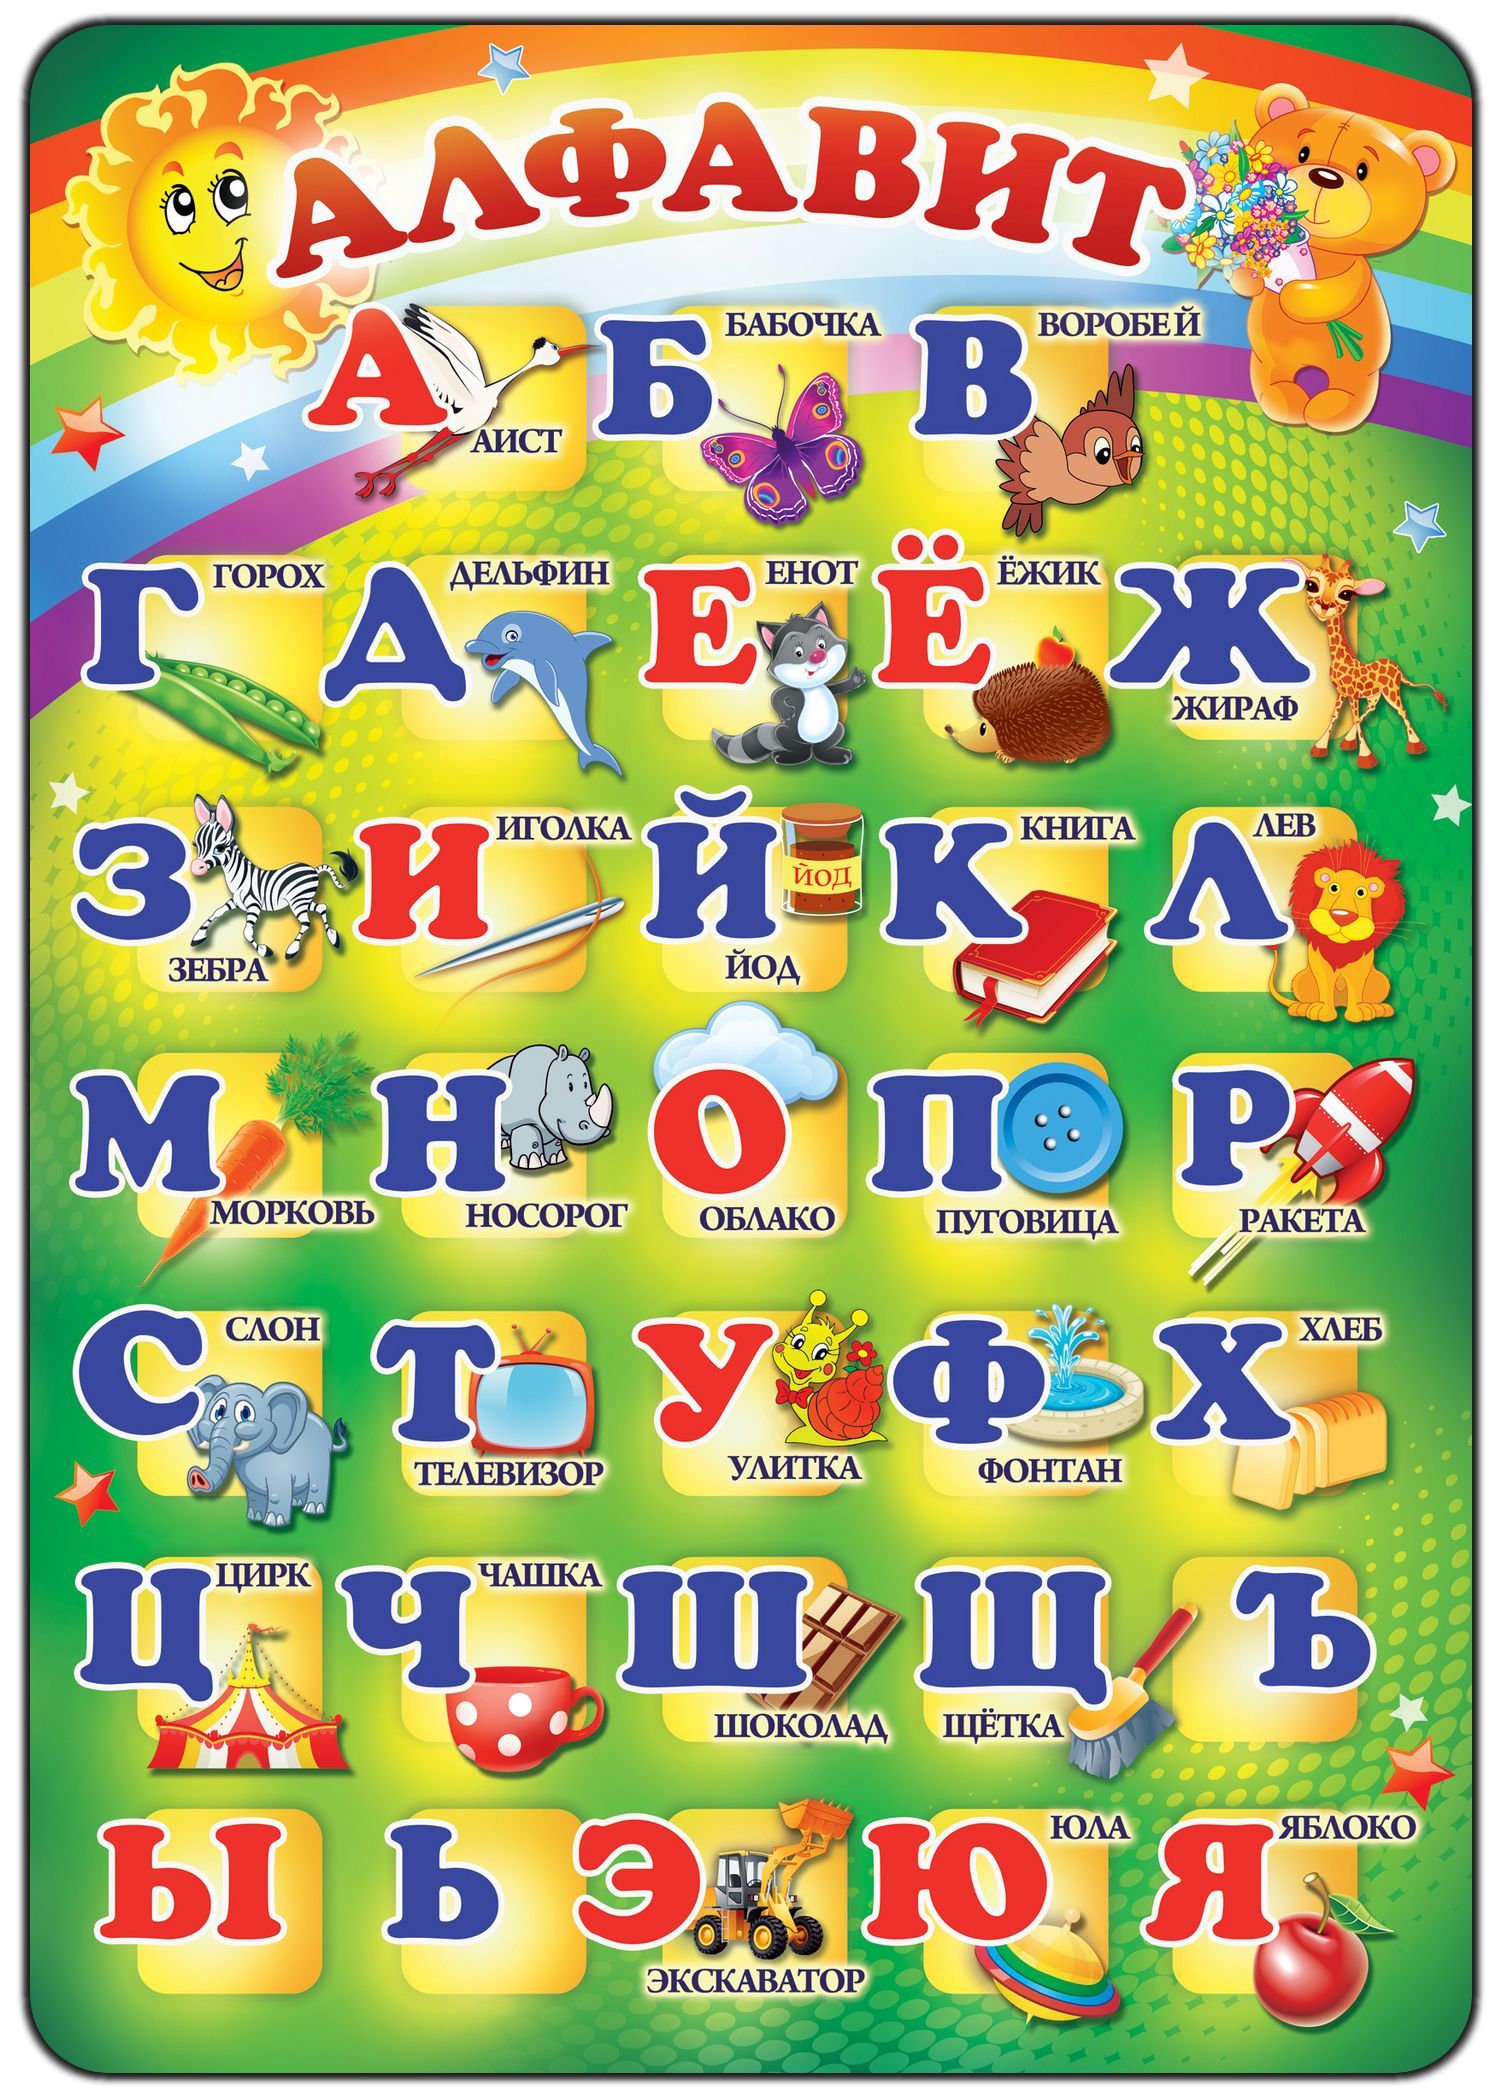 Буквы алфавита с номерами по порядку русский. Алфавит для детей. Алфавит русский для детей. Алфавит "детский". Азбука в картинках.